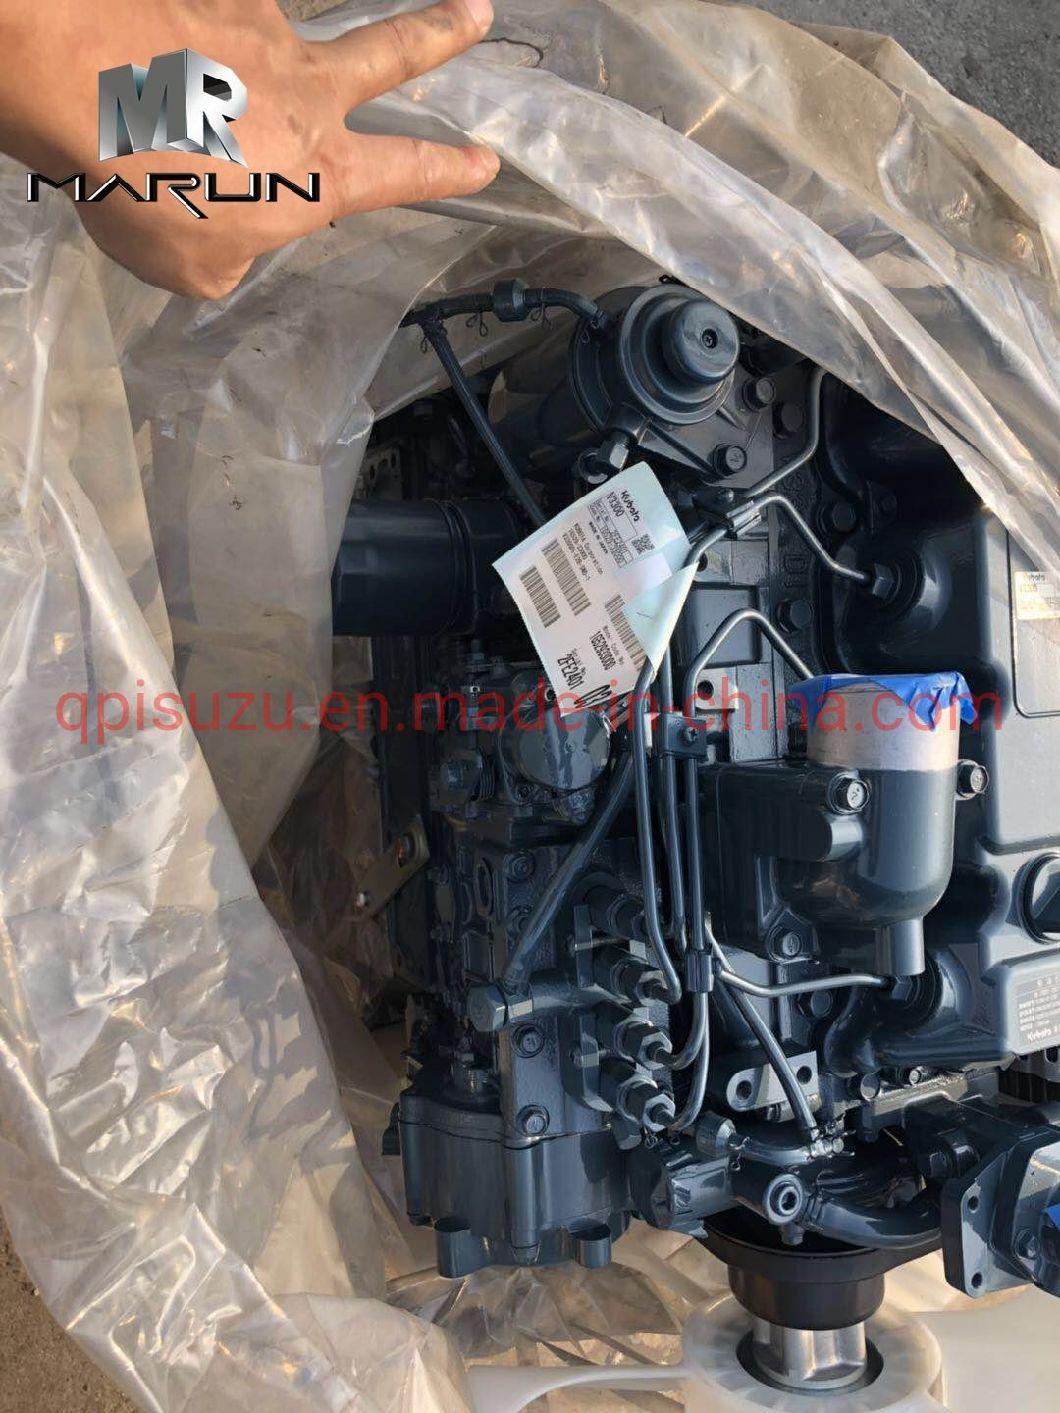 Kubota V3300 Direct Injection Engine Assembly